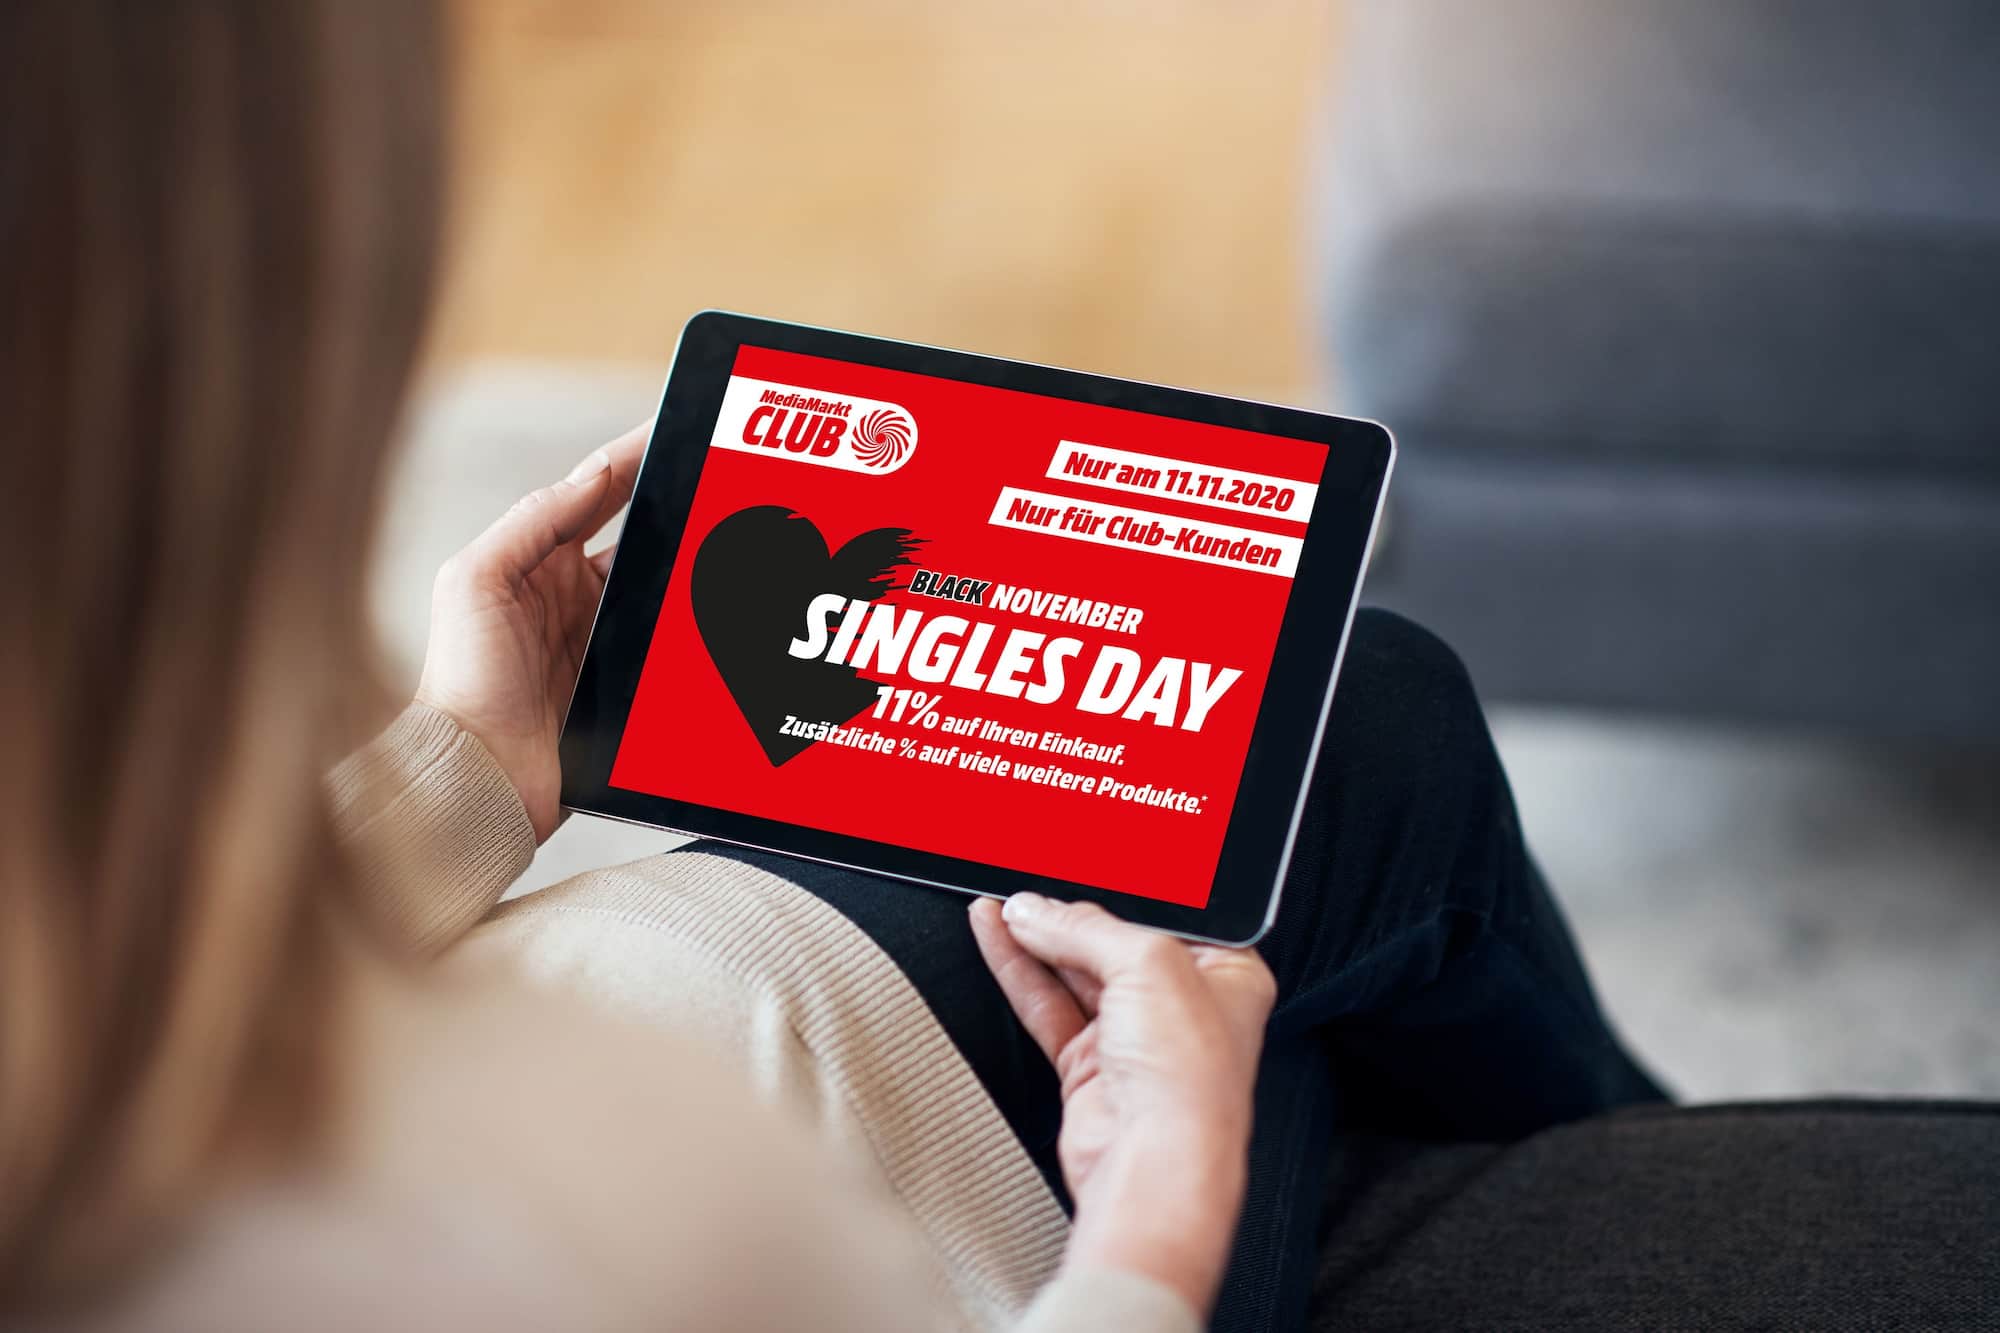 Zum „Singles Day“ am 11. November bot MediaMarkt eine besondere Rabatt-Aktion an.